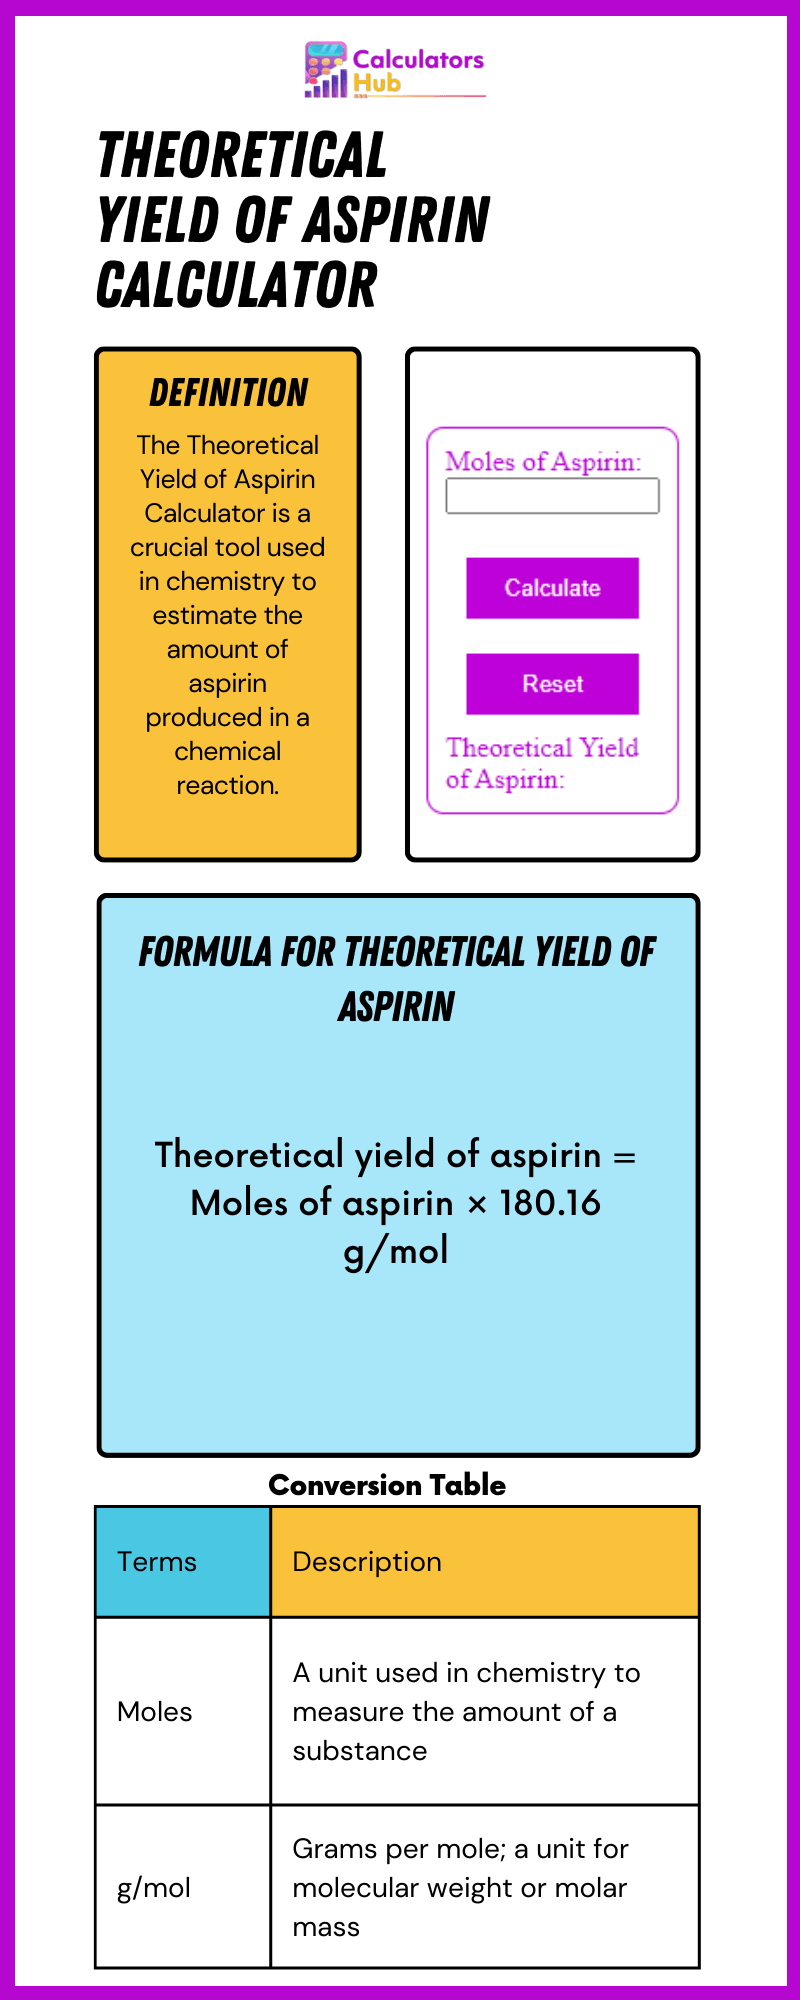 Rechner für die theoretische Ausbeute von Aspirin